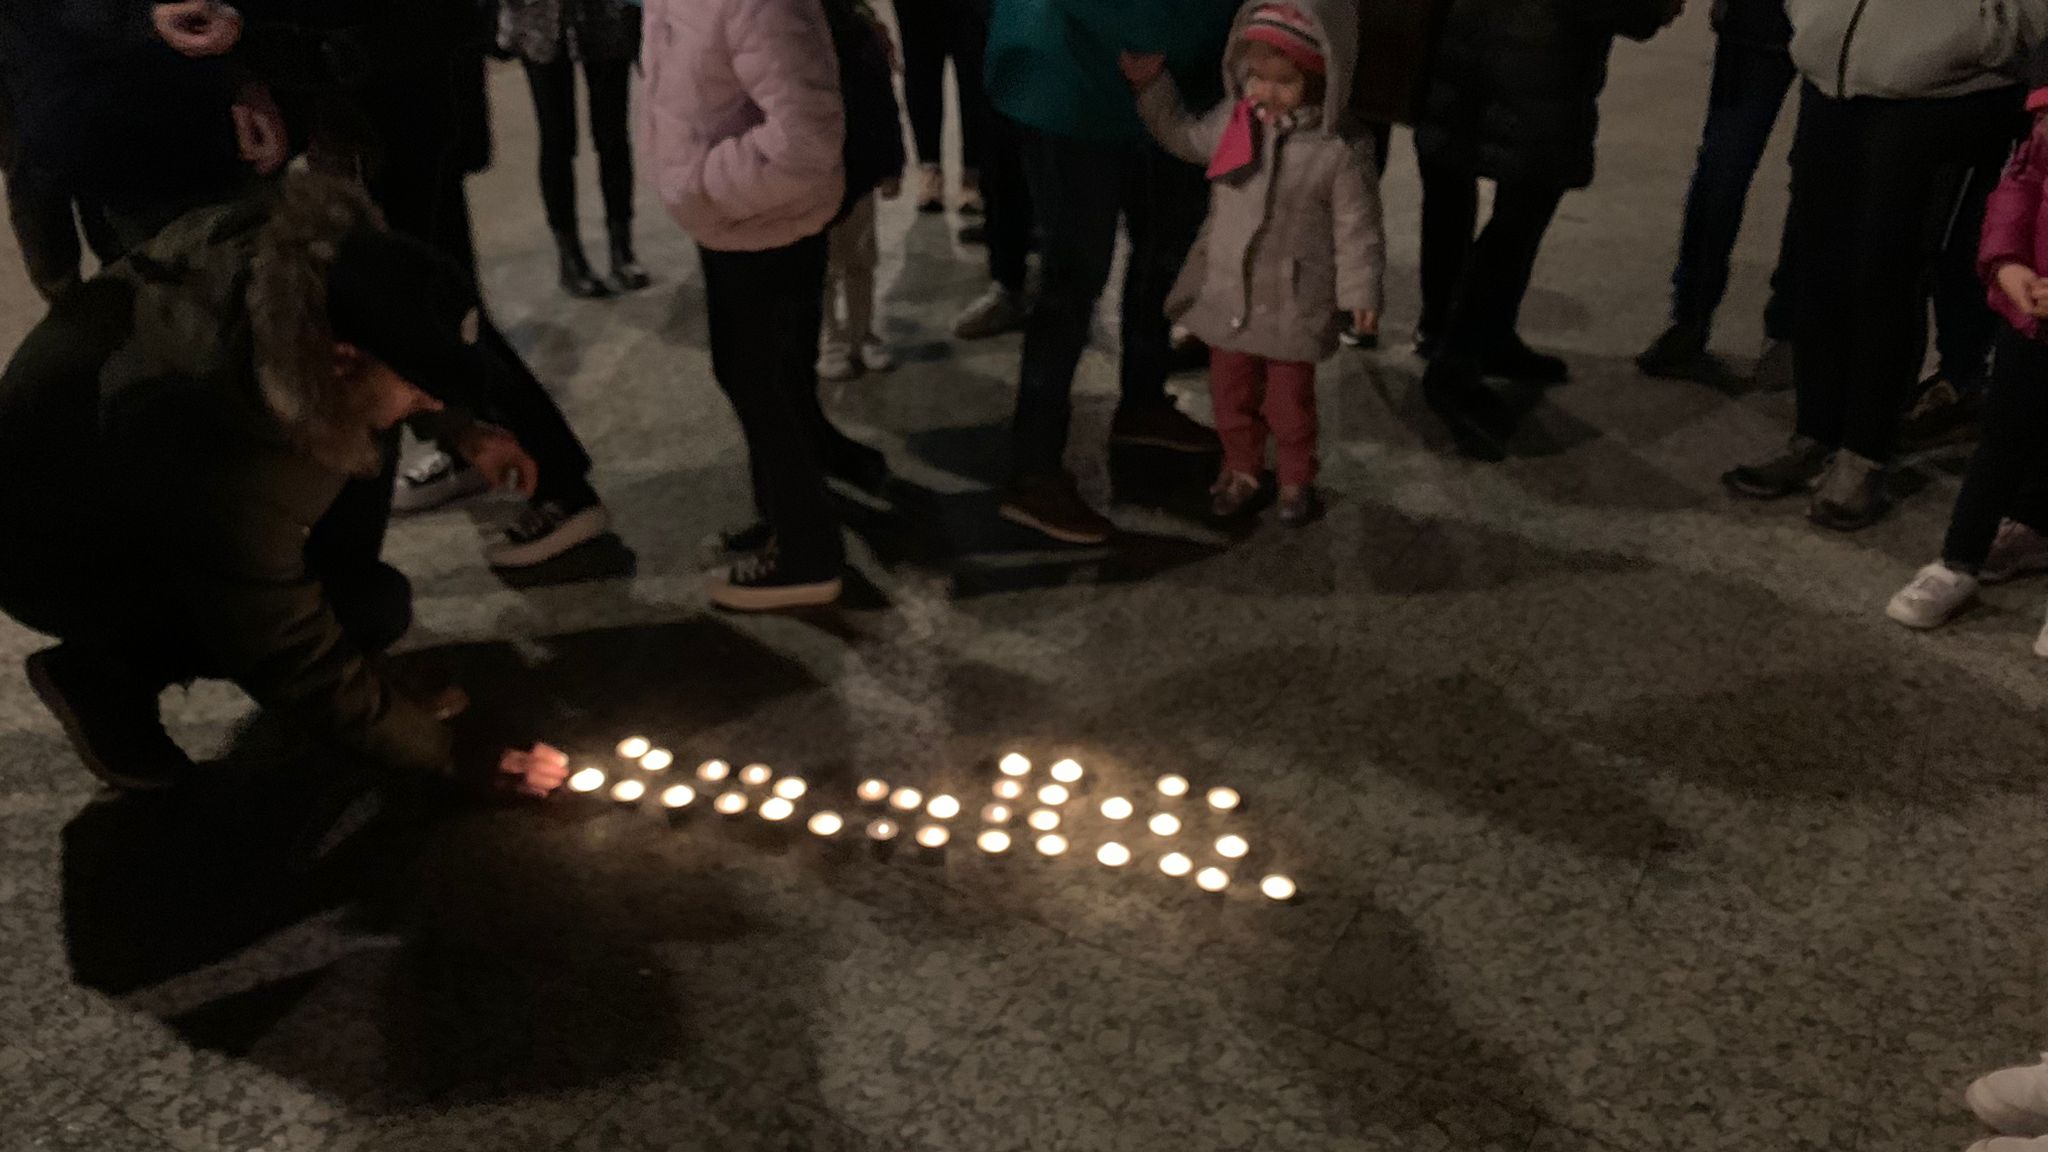 Encendido de velas, manifiesto y concentración en Duruelo de la Sierra en rechazo a la violencia contra la mujer